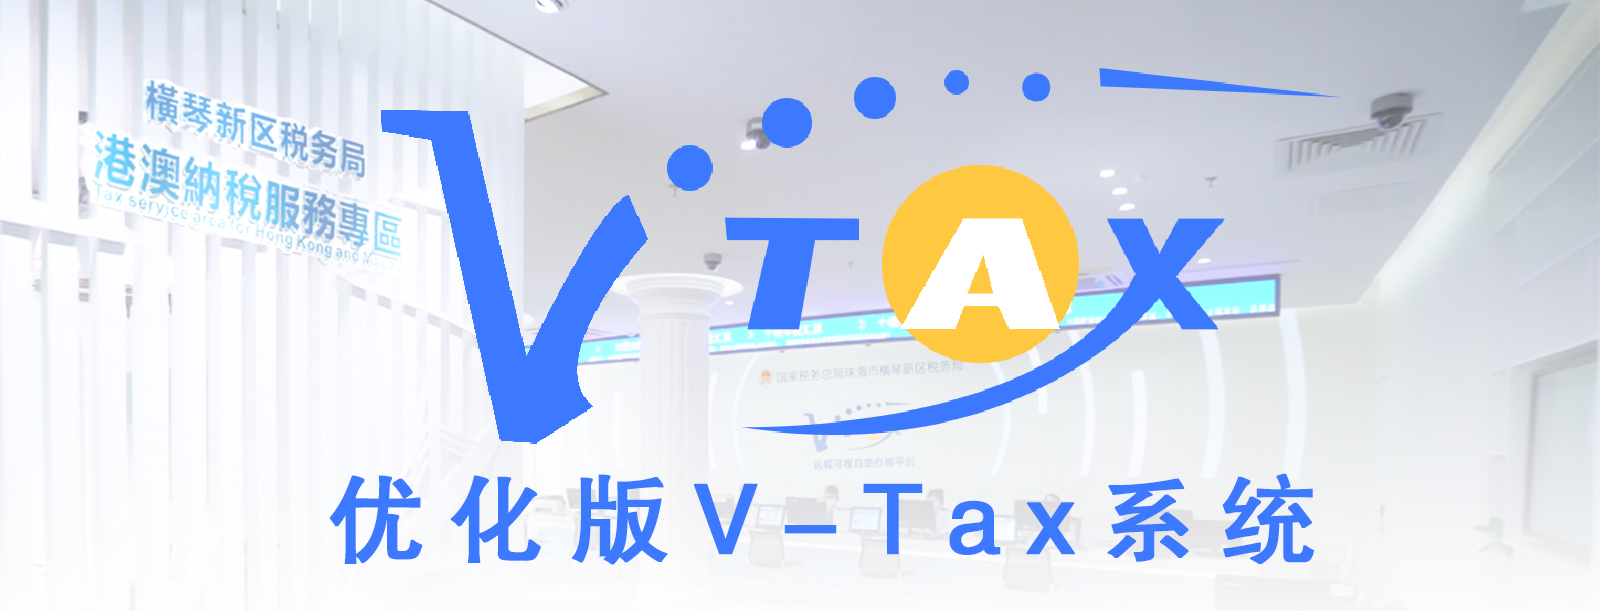 V-Tax远程可视自助办税系统